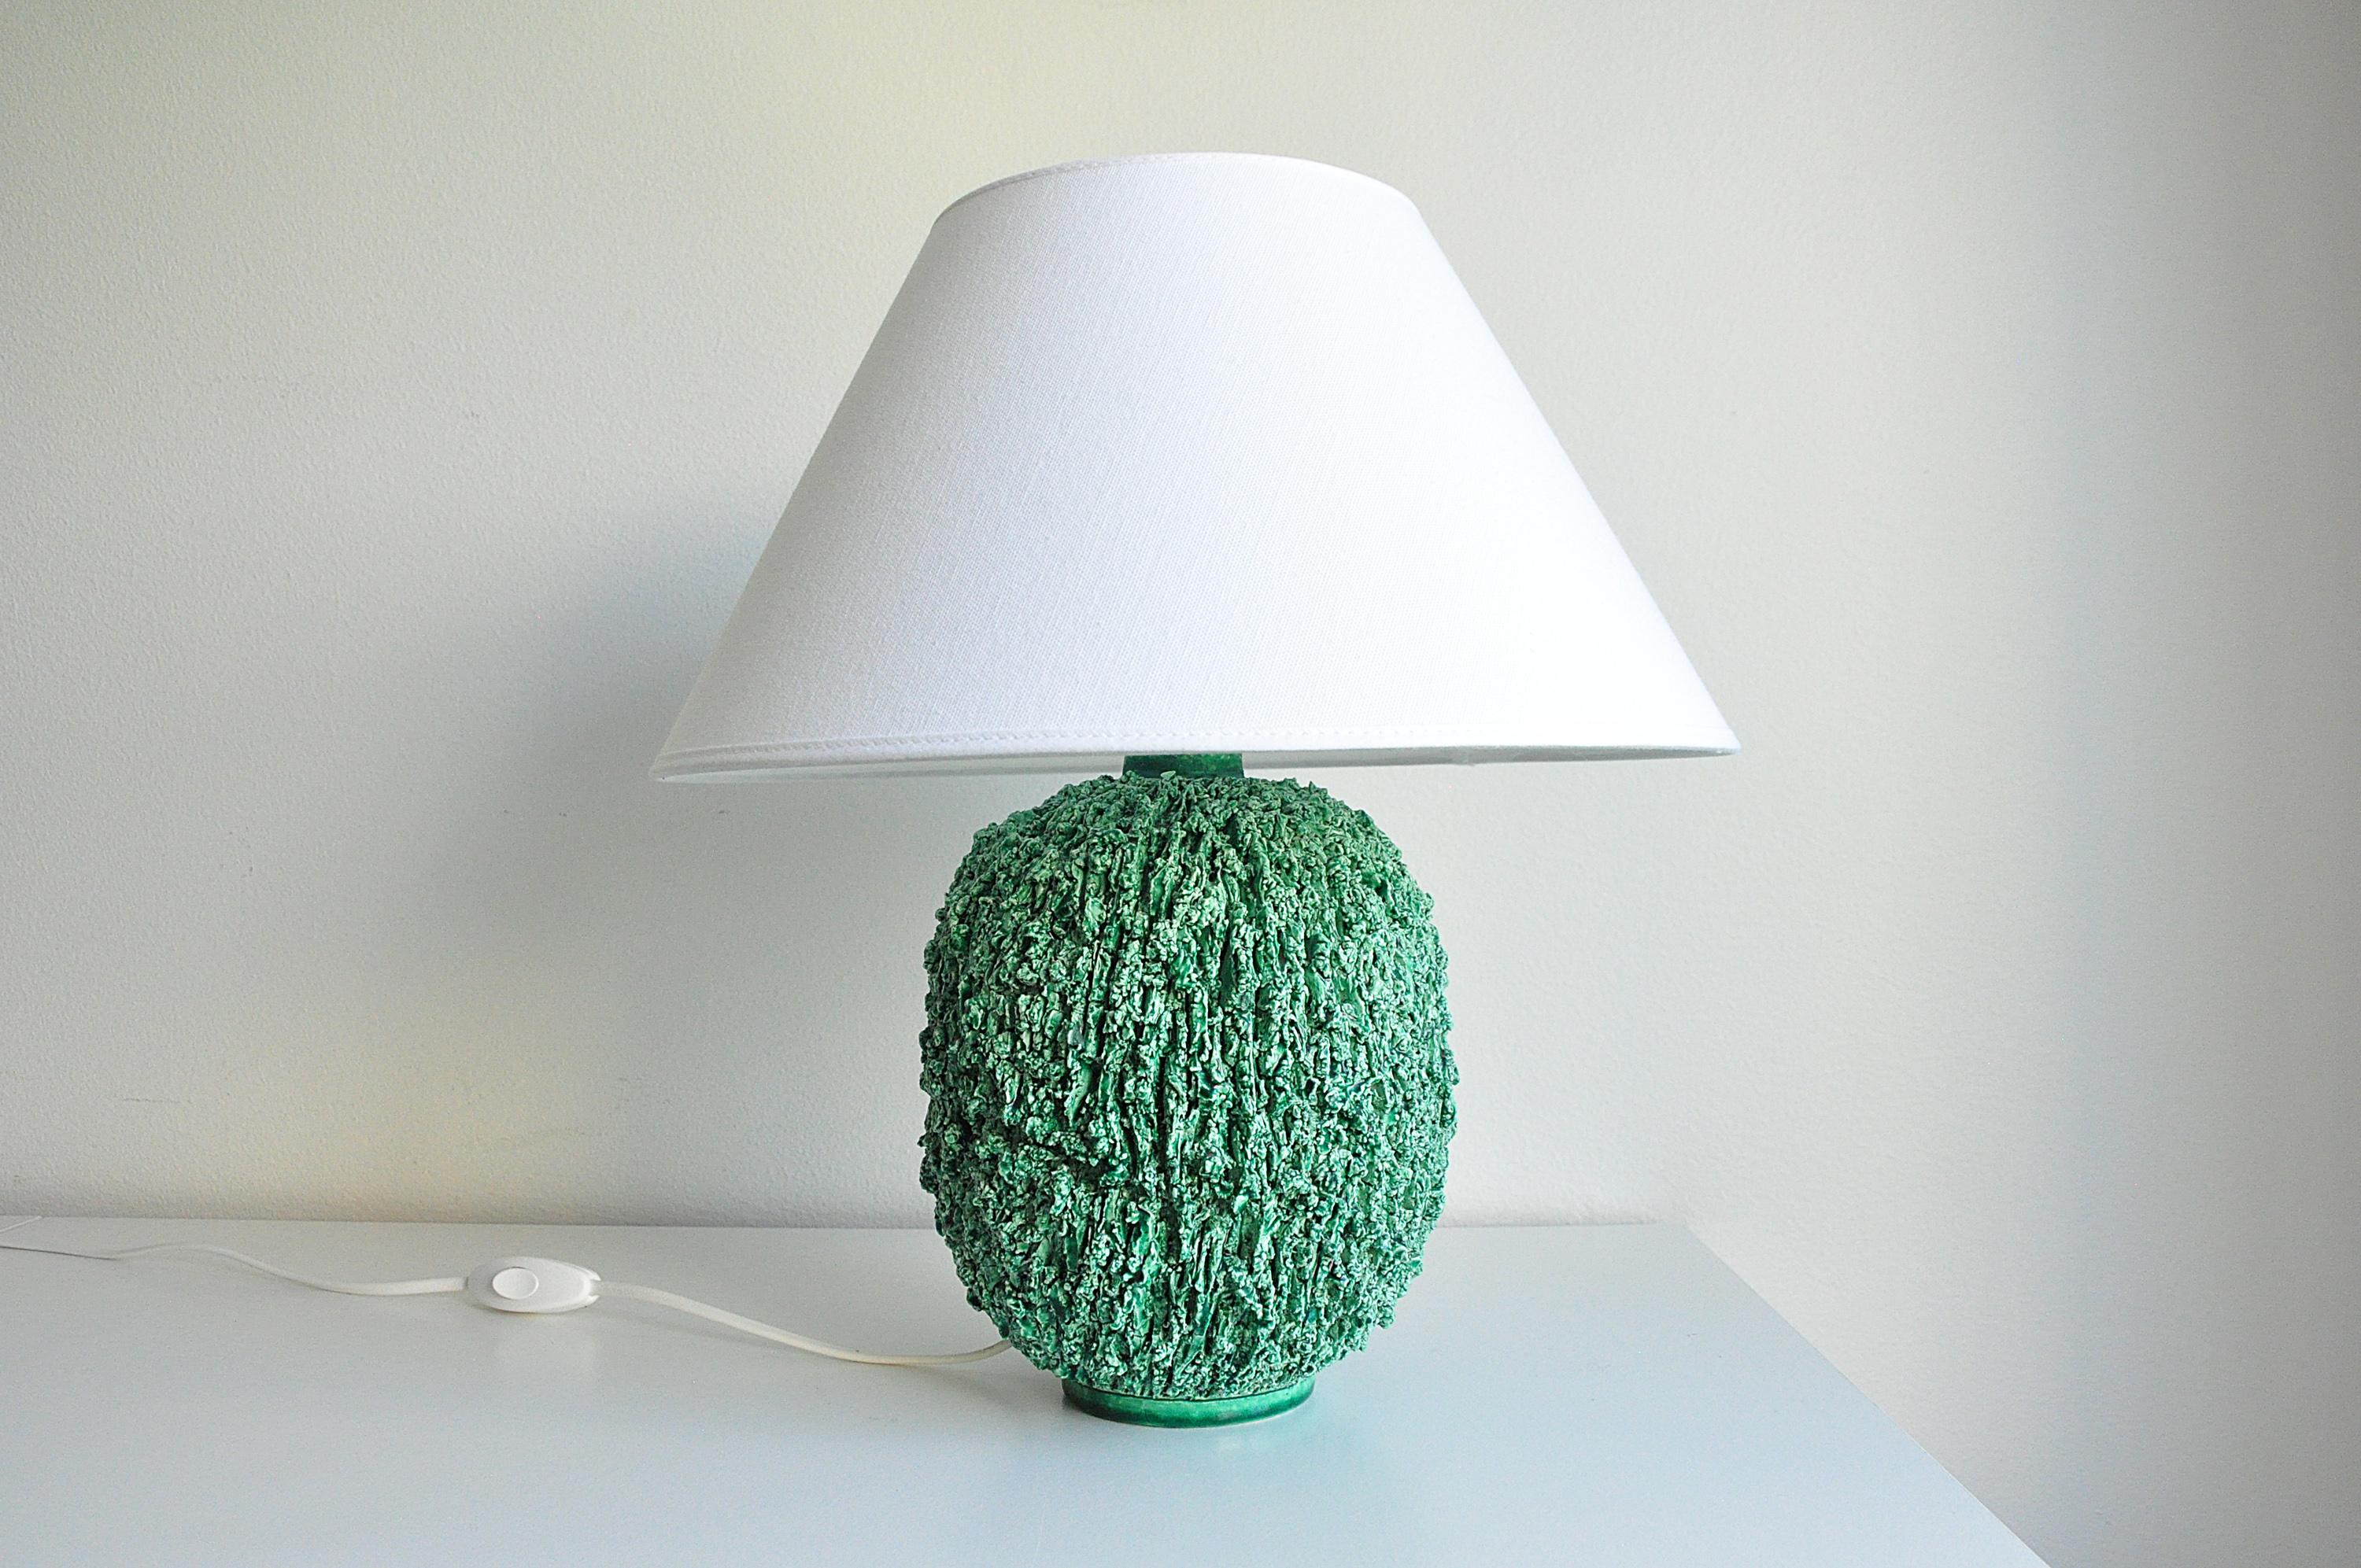 Lampe de table ''Chamotte'' de Gunnar Nylund pour Rörstrand.
La lampe est faite d'argile chamottée et finie avec une glaçure lustrée de couleur verte. New wiring, Please note : the shade is not included.